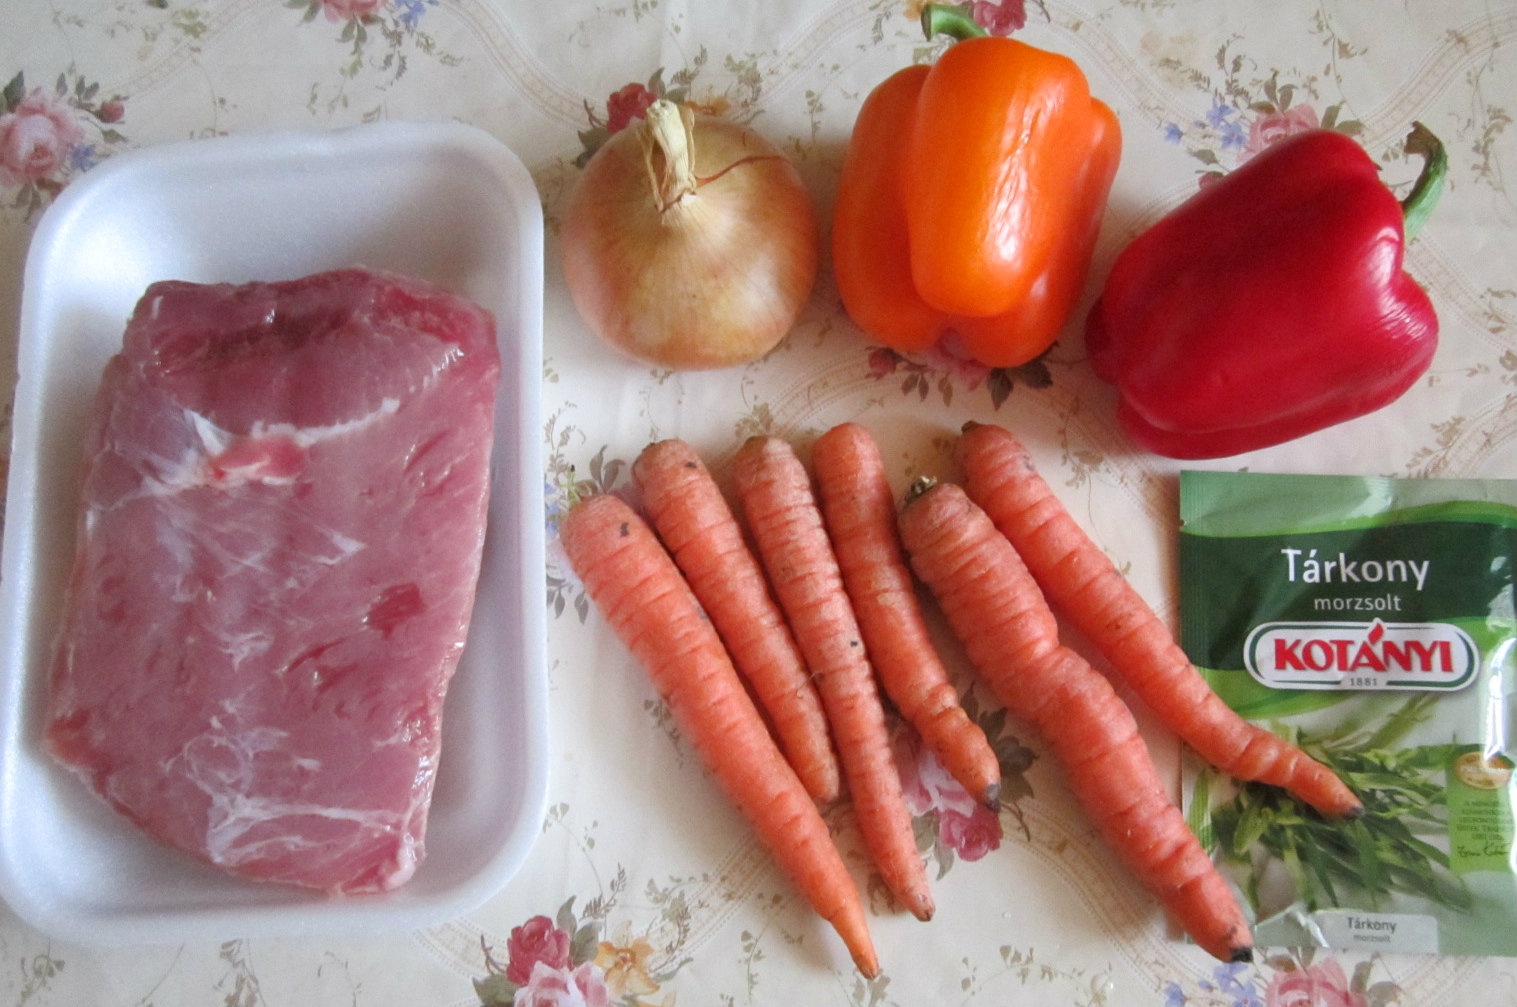 Ciorba taraneasca cu carne de porc si legume